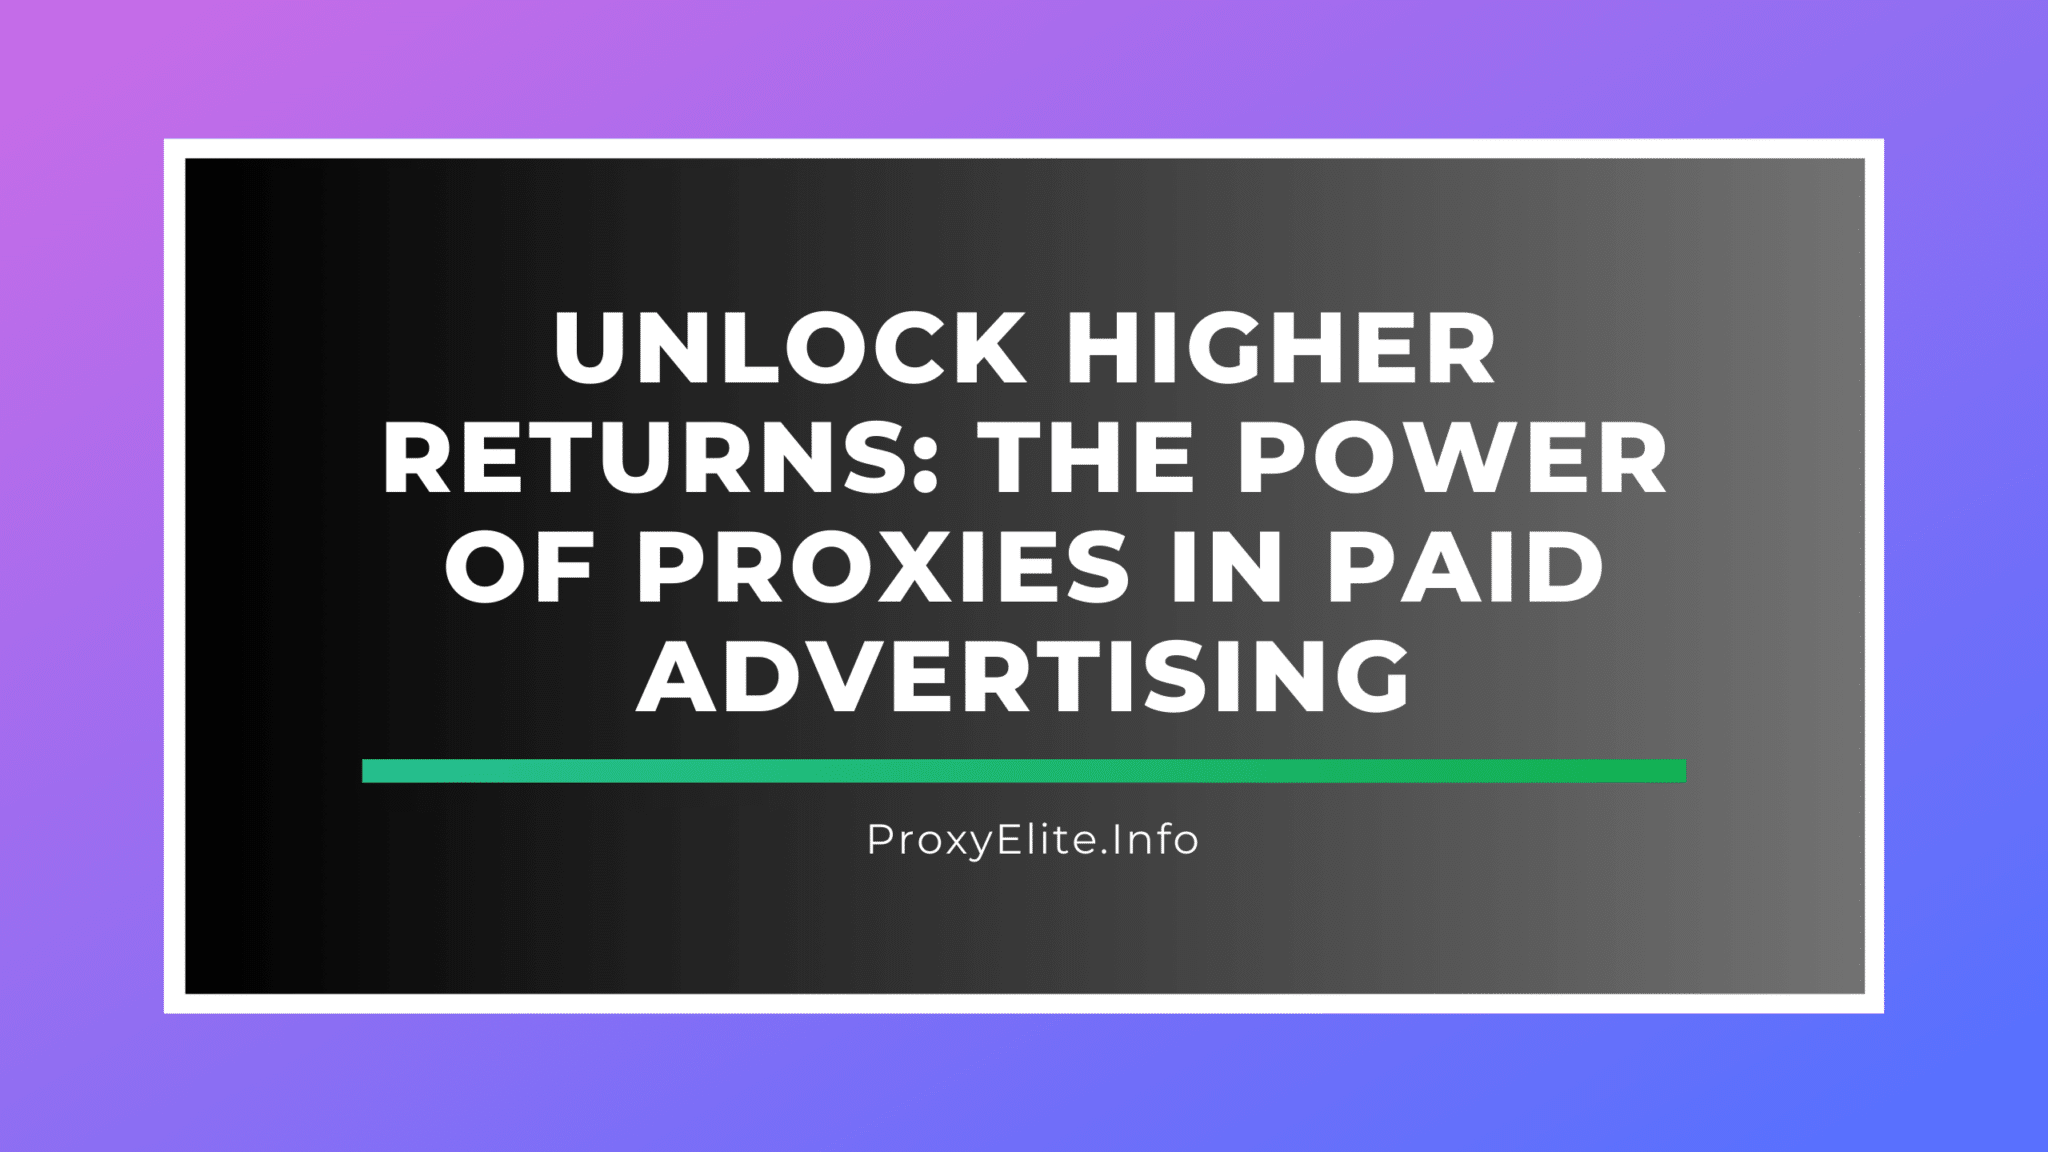 Obtenha retornos mais elevados: o poder dos proxies na publicidade paga